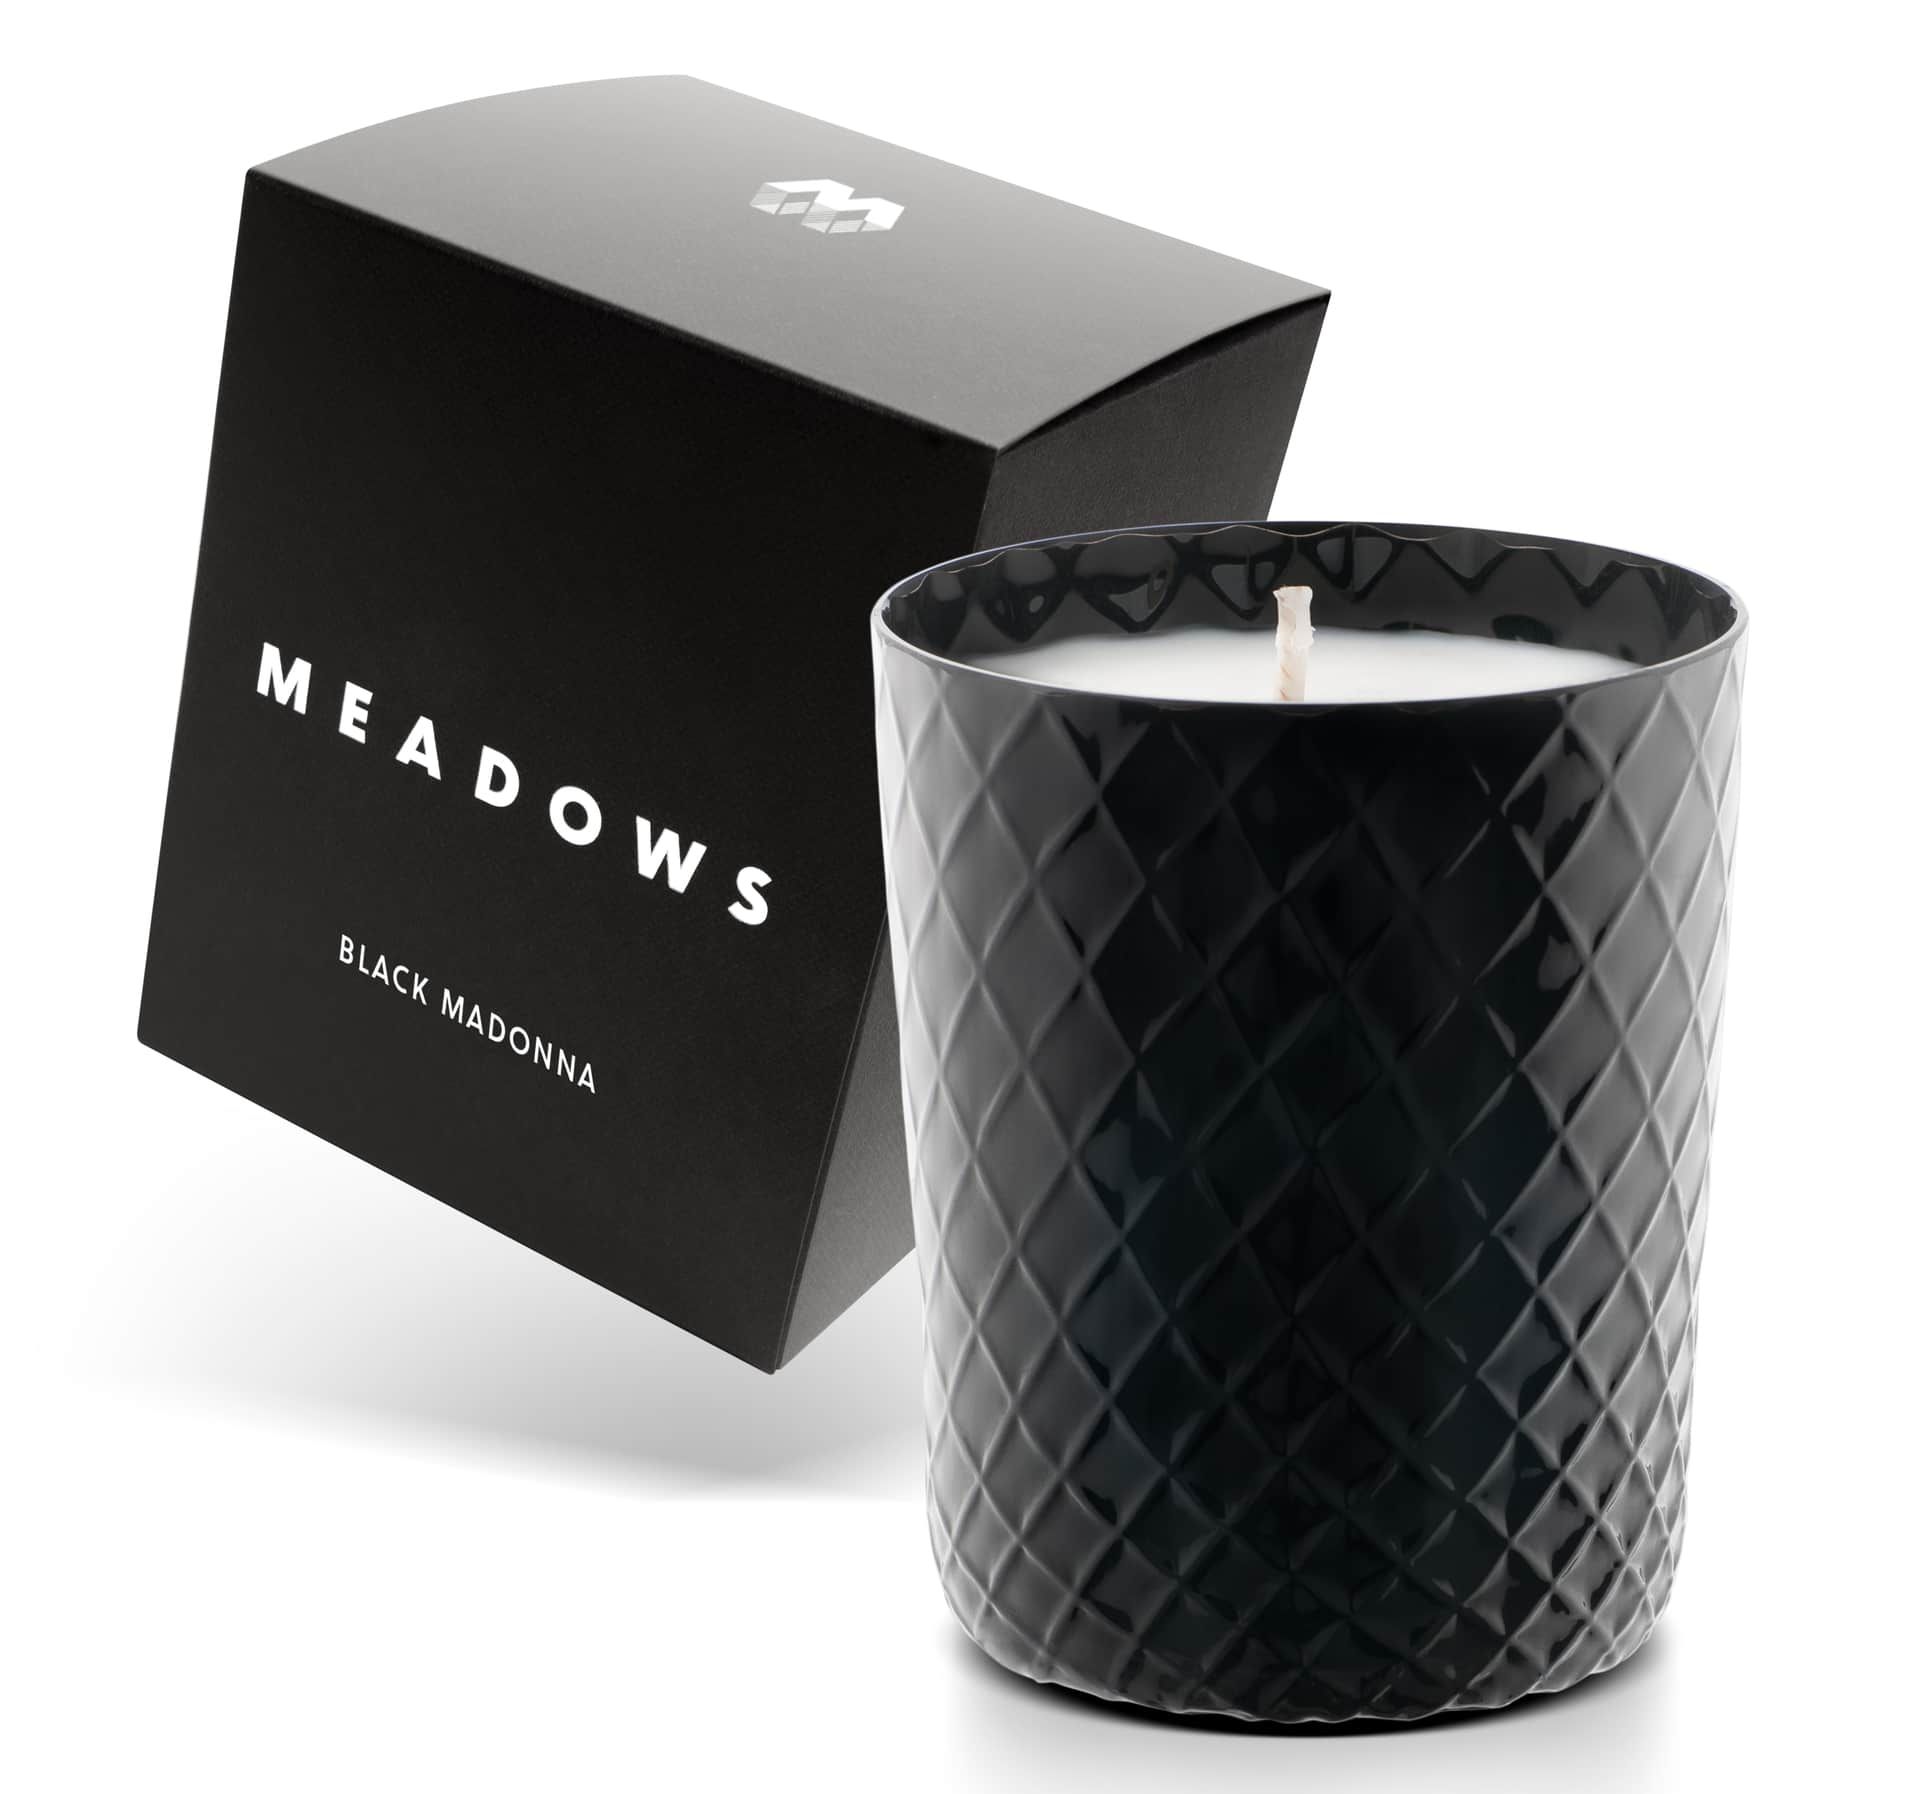 MEADOWS Vonná sviečka Meadows Black Madonna 200 g